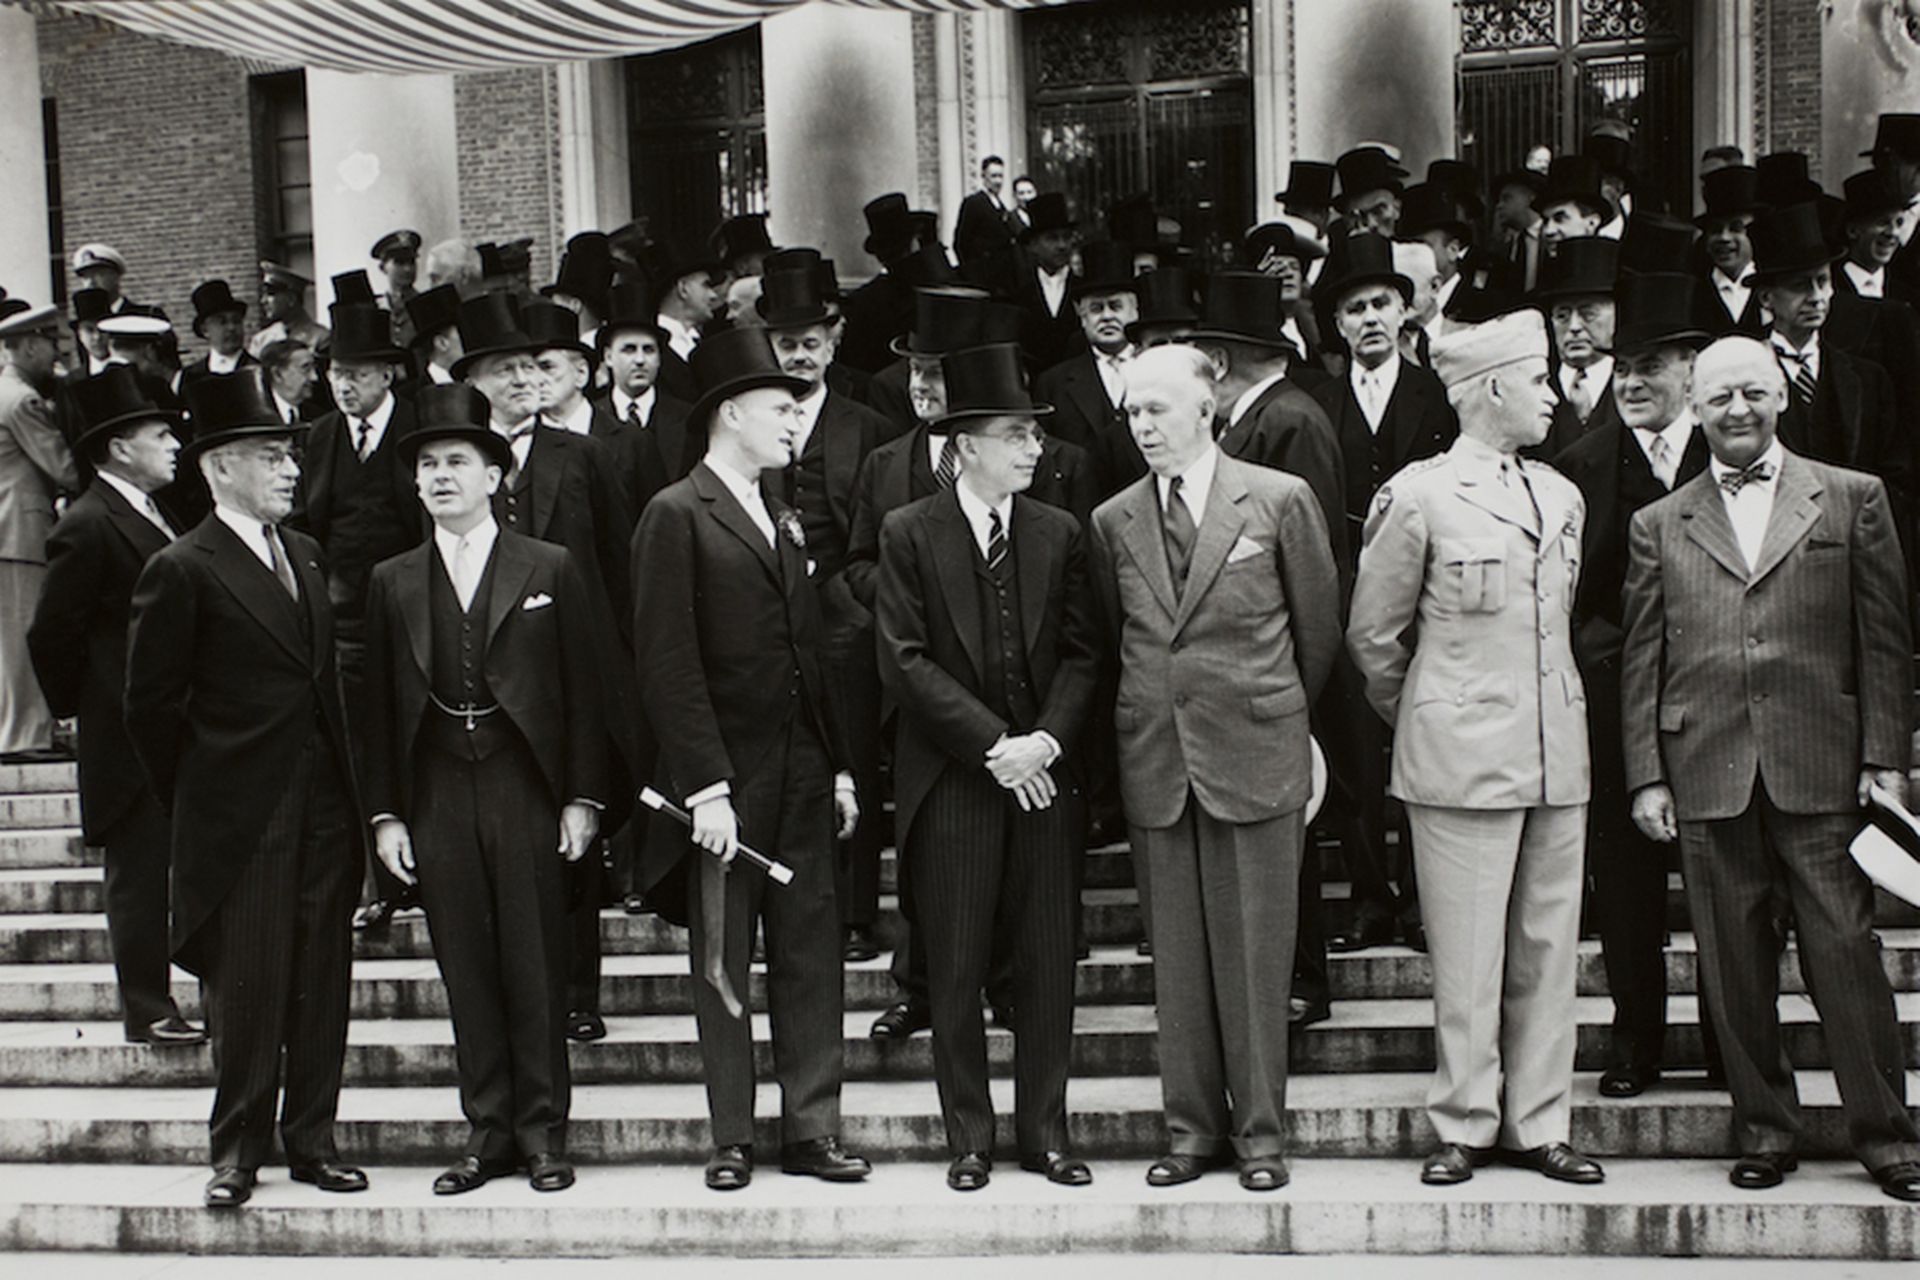 1947年6月5日，美国国务卿马歇尔（George Marshall）于哈佛大学毕业典礼发表演说，提出“欧洲复兴计划”的构想──又称为“马歇尔计划”，希冀能挽救二战后欧洲的残破经济。前排右边第三位即马歇尔。（The Harvard Gazette网站）